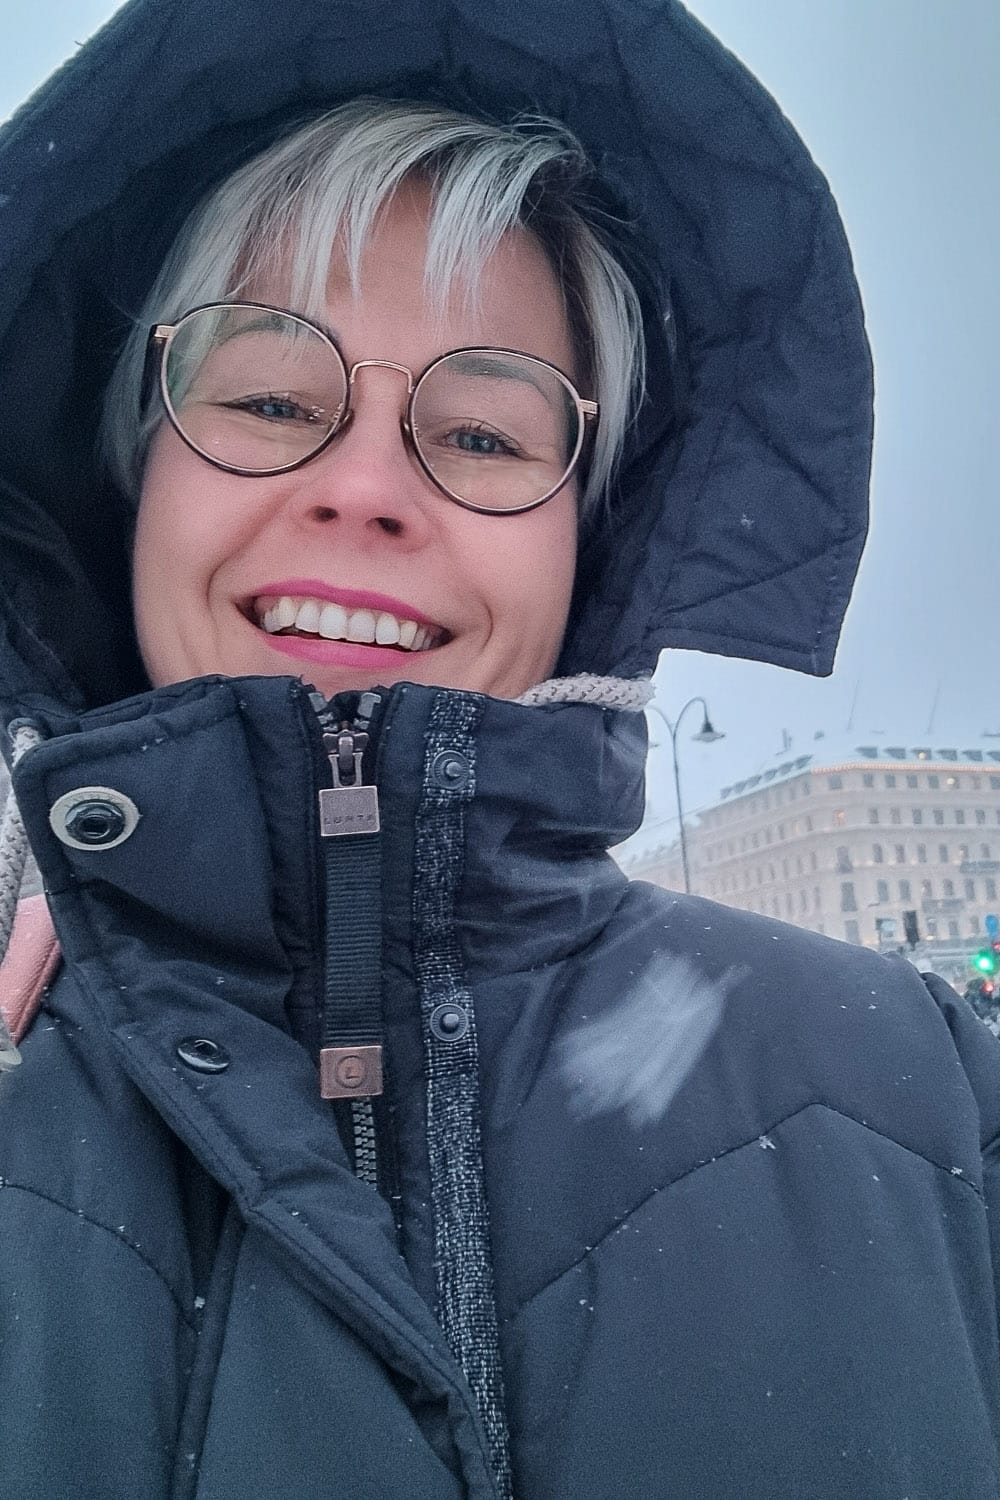 Tekemistä Tukholmassa: 2 upeaa sadepäivän kohdetta